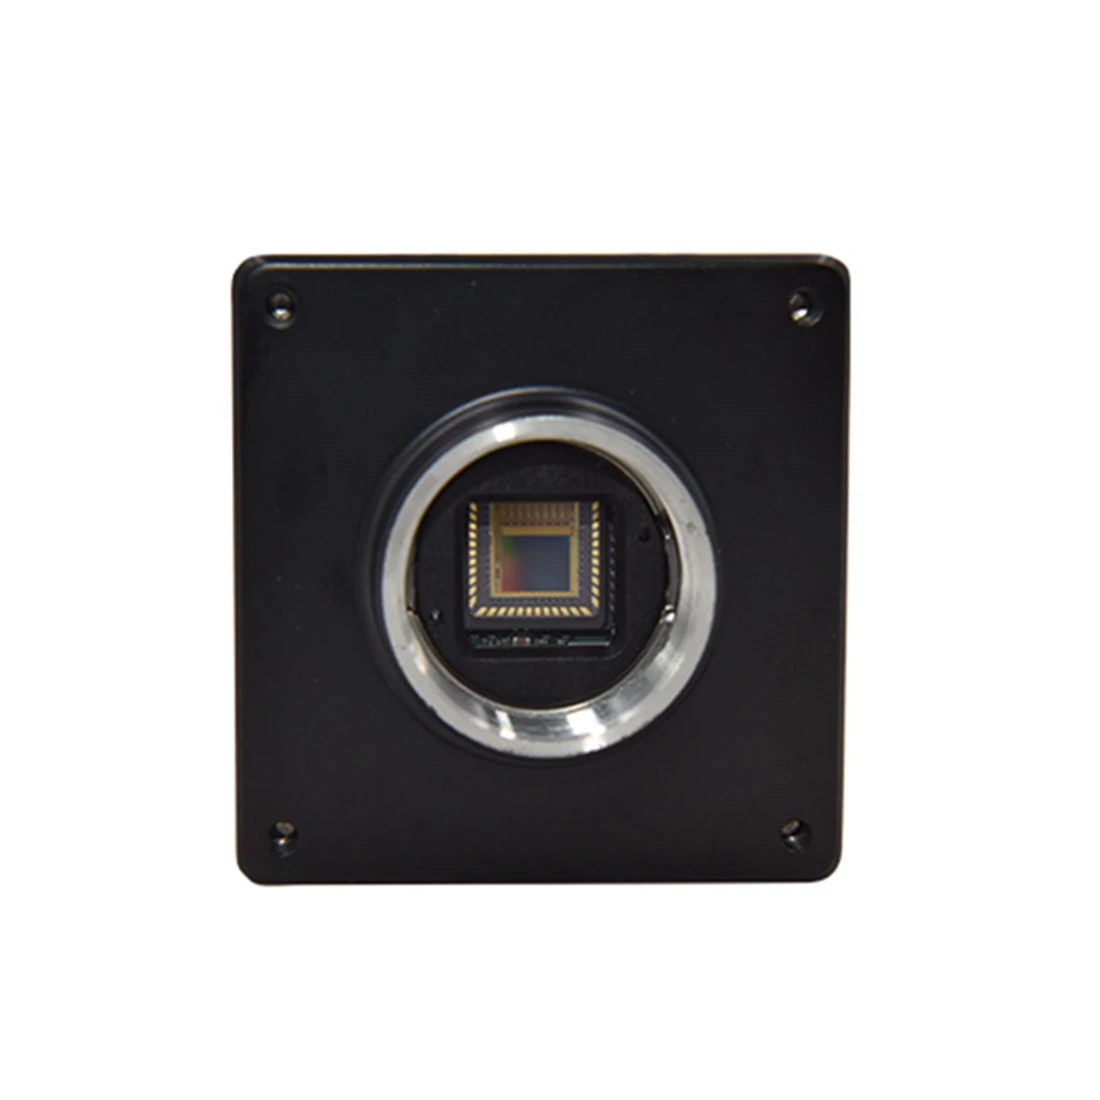 Vision Datum Mars6000 IMX178 6-Мегапиксельная Подвижная CMOS-Камера Высокого Разрешения На уровне платы Компактный Промышленный Дизайн для Визуального Контроля